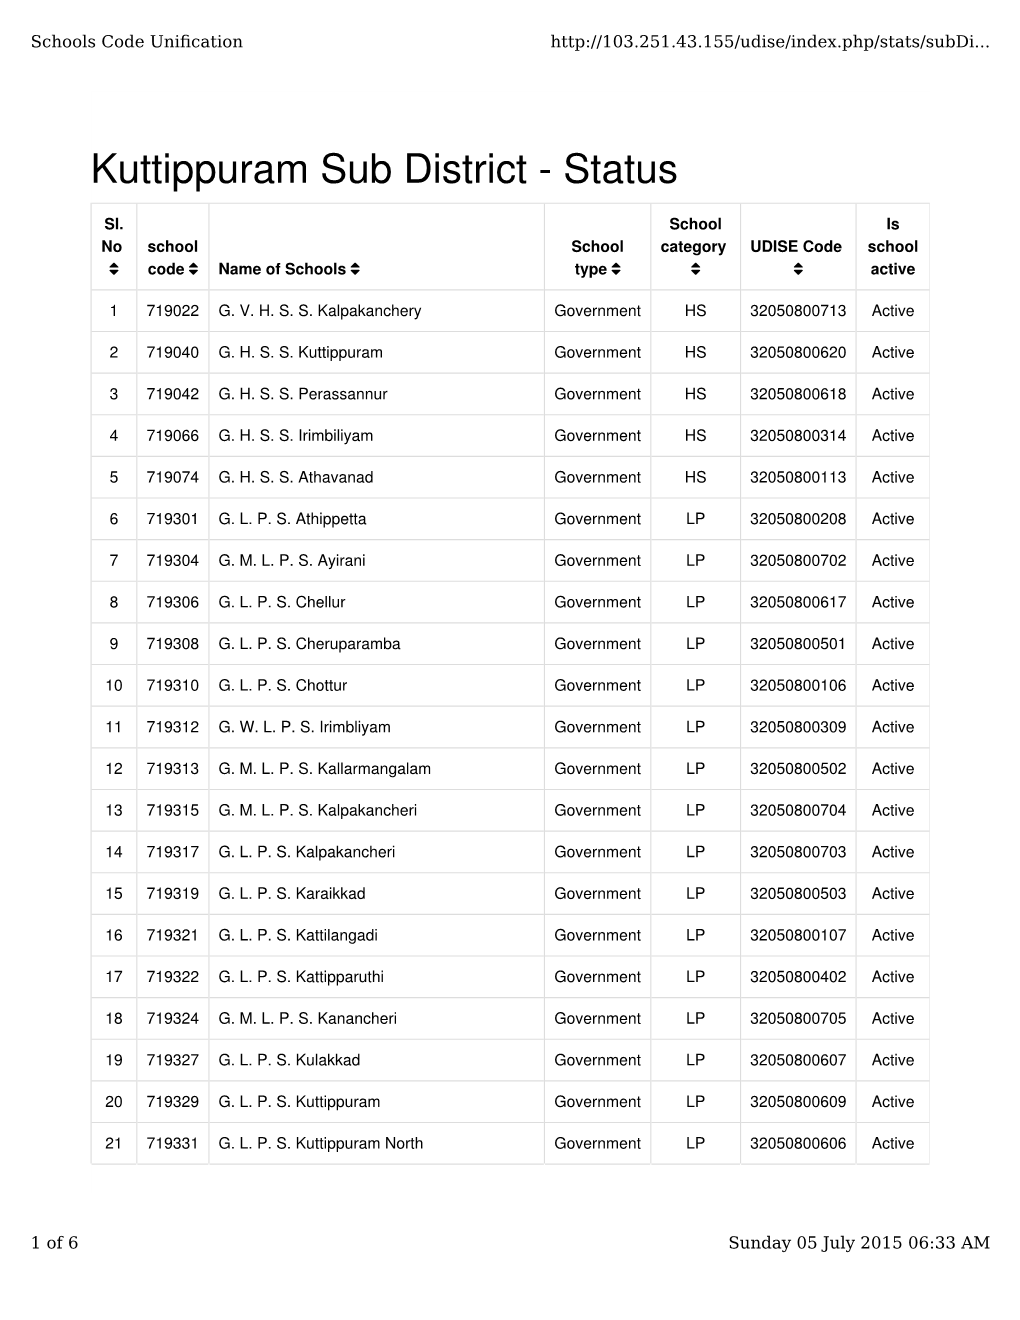 Kuttippuram Sub District - Status